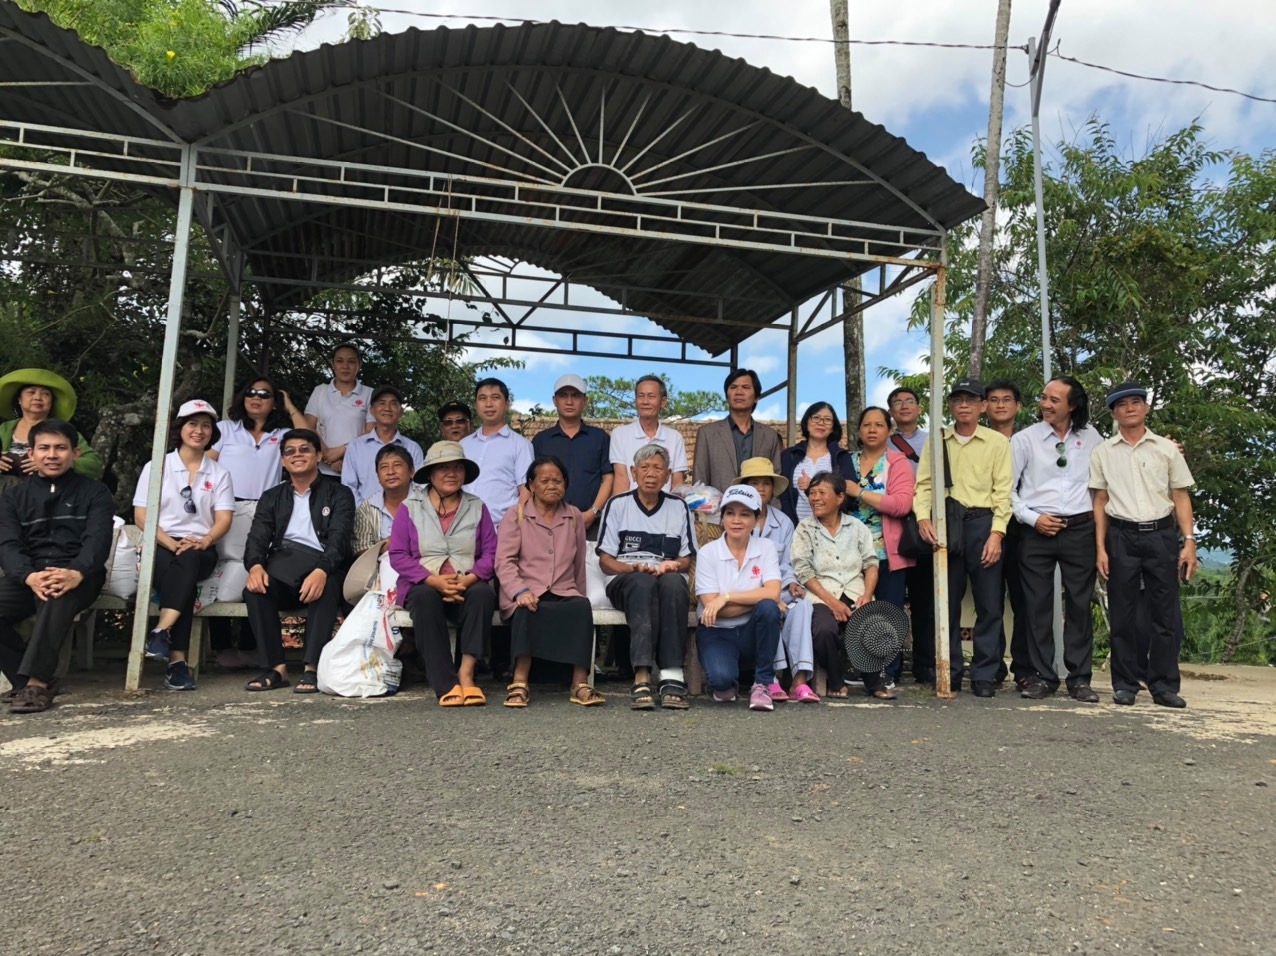 Caritas Giáo xứ Bình Chiểu: mục vụ bác ái tại trại phong Di Linh - Lâm Đồng